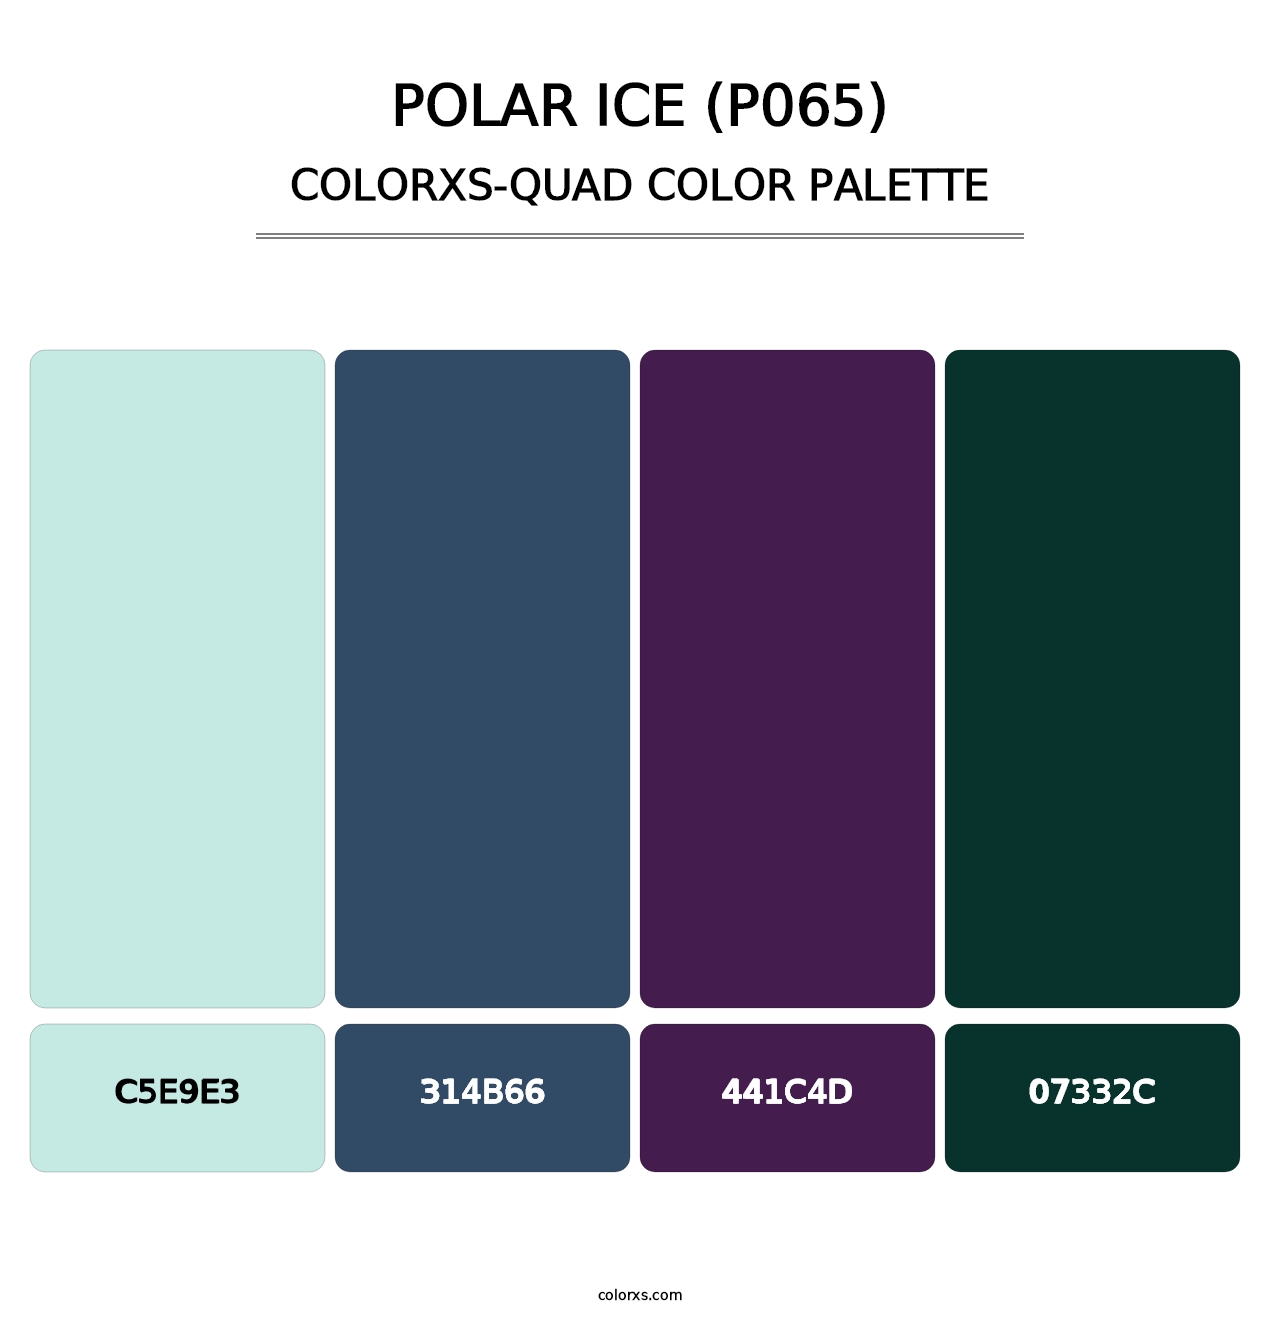 Polar Ice (P065) - Colorxs Quad Palette